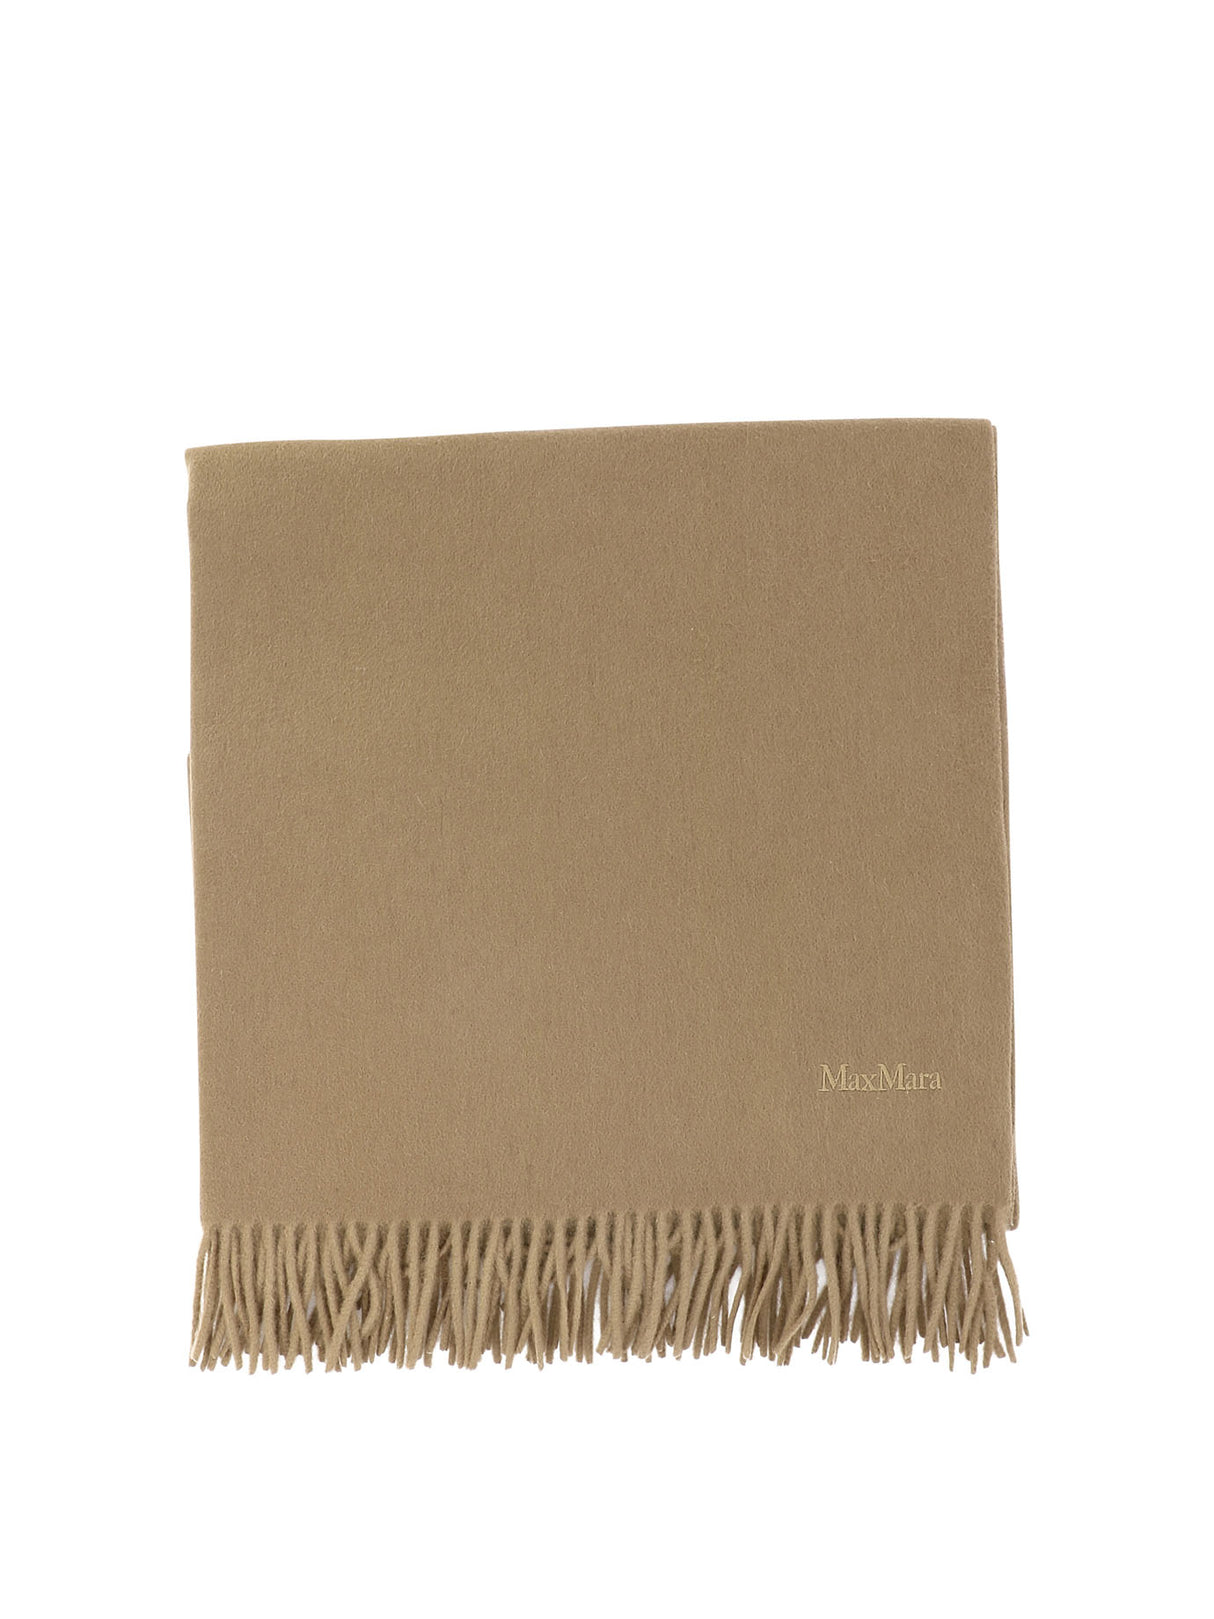 羊絨圍巾 - 單色棕色繡花